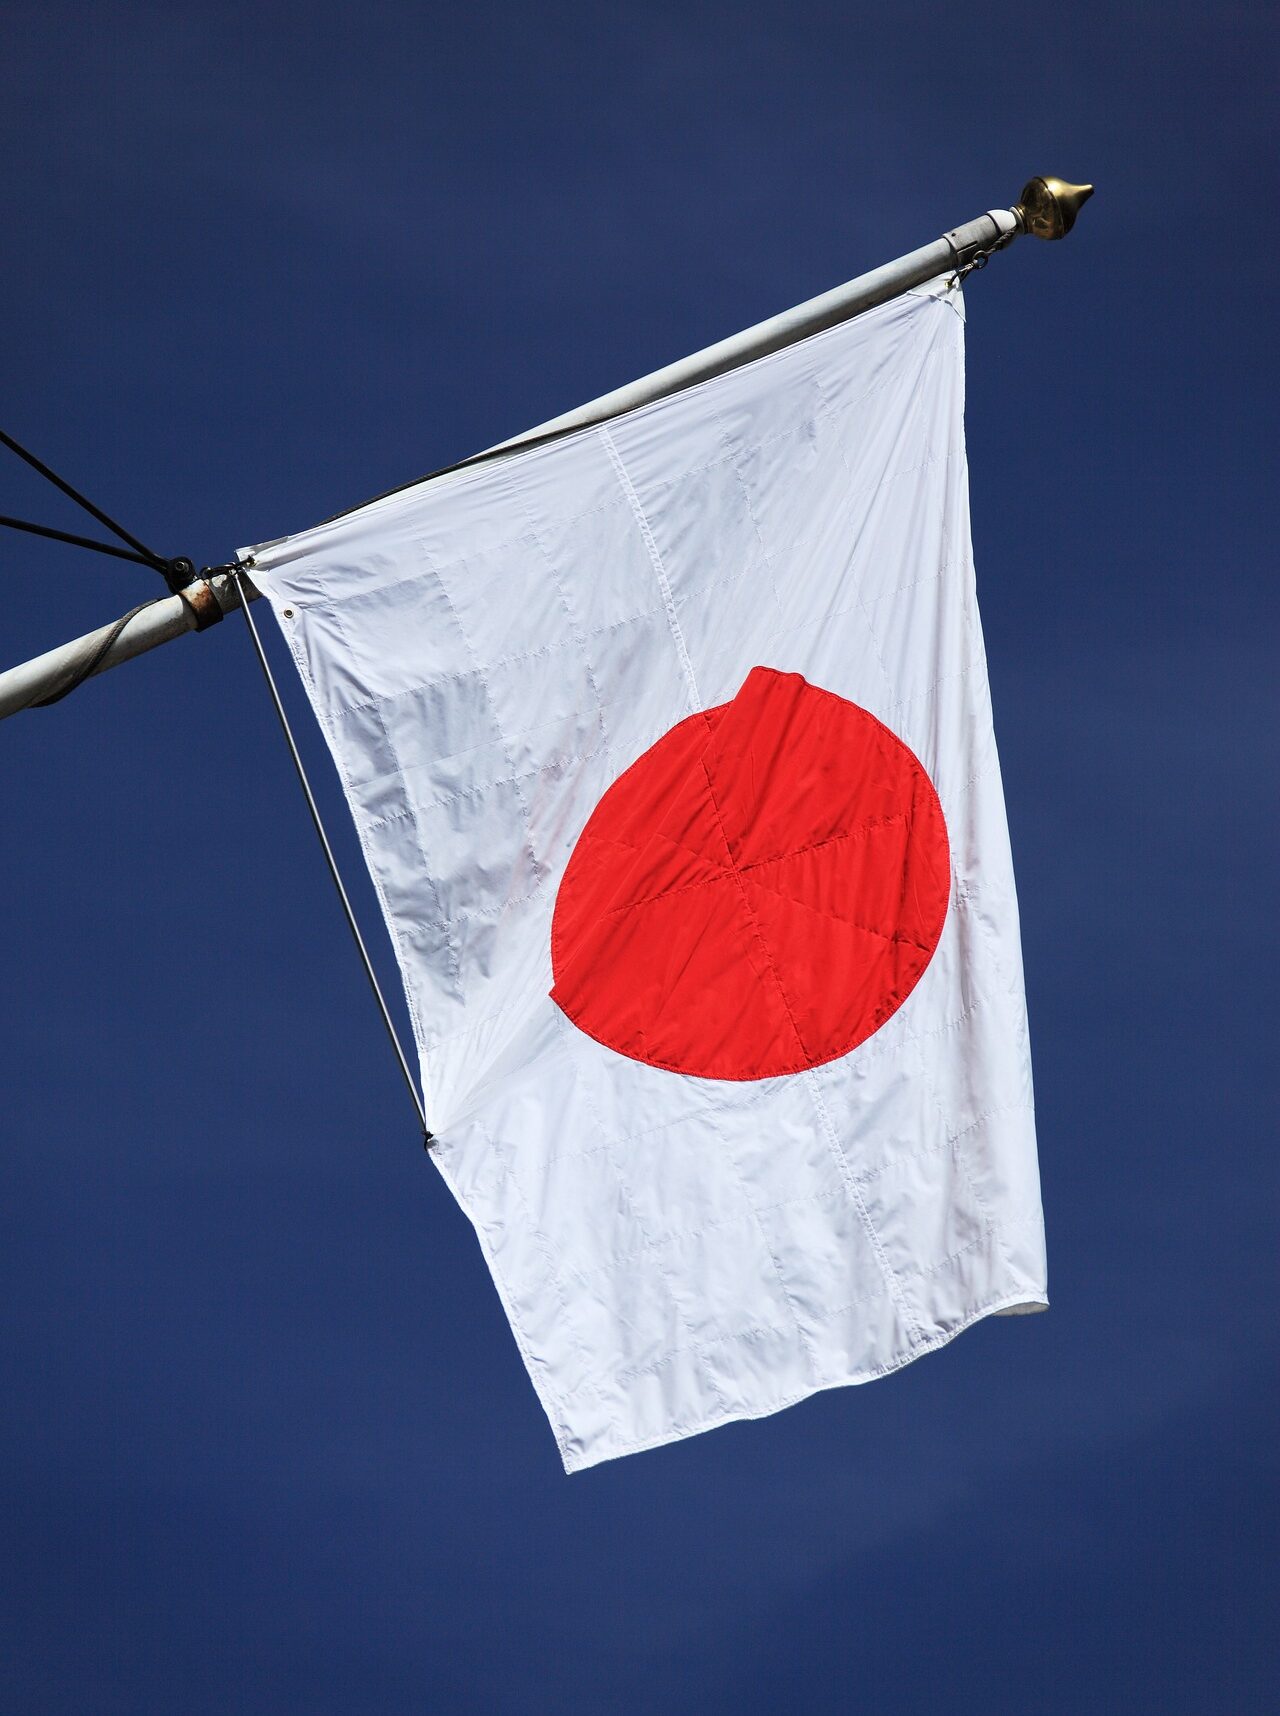 Japon : démission d'un ministre critiqué pour ses liens avec la secte Moon